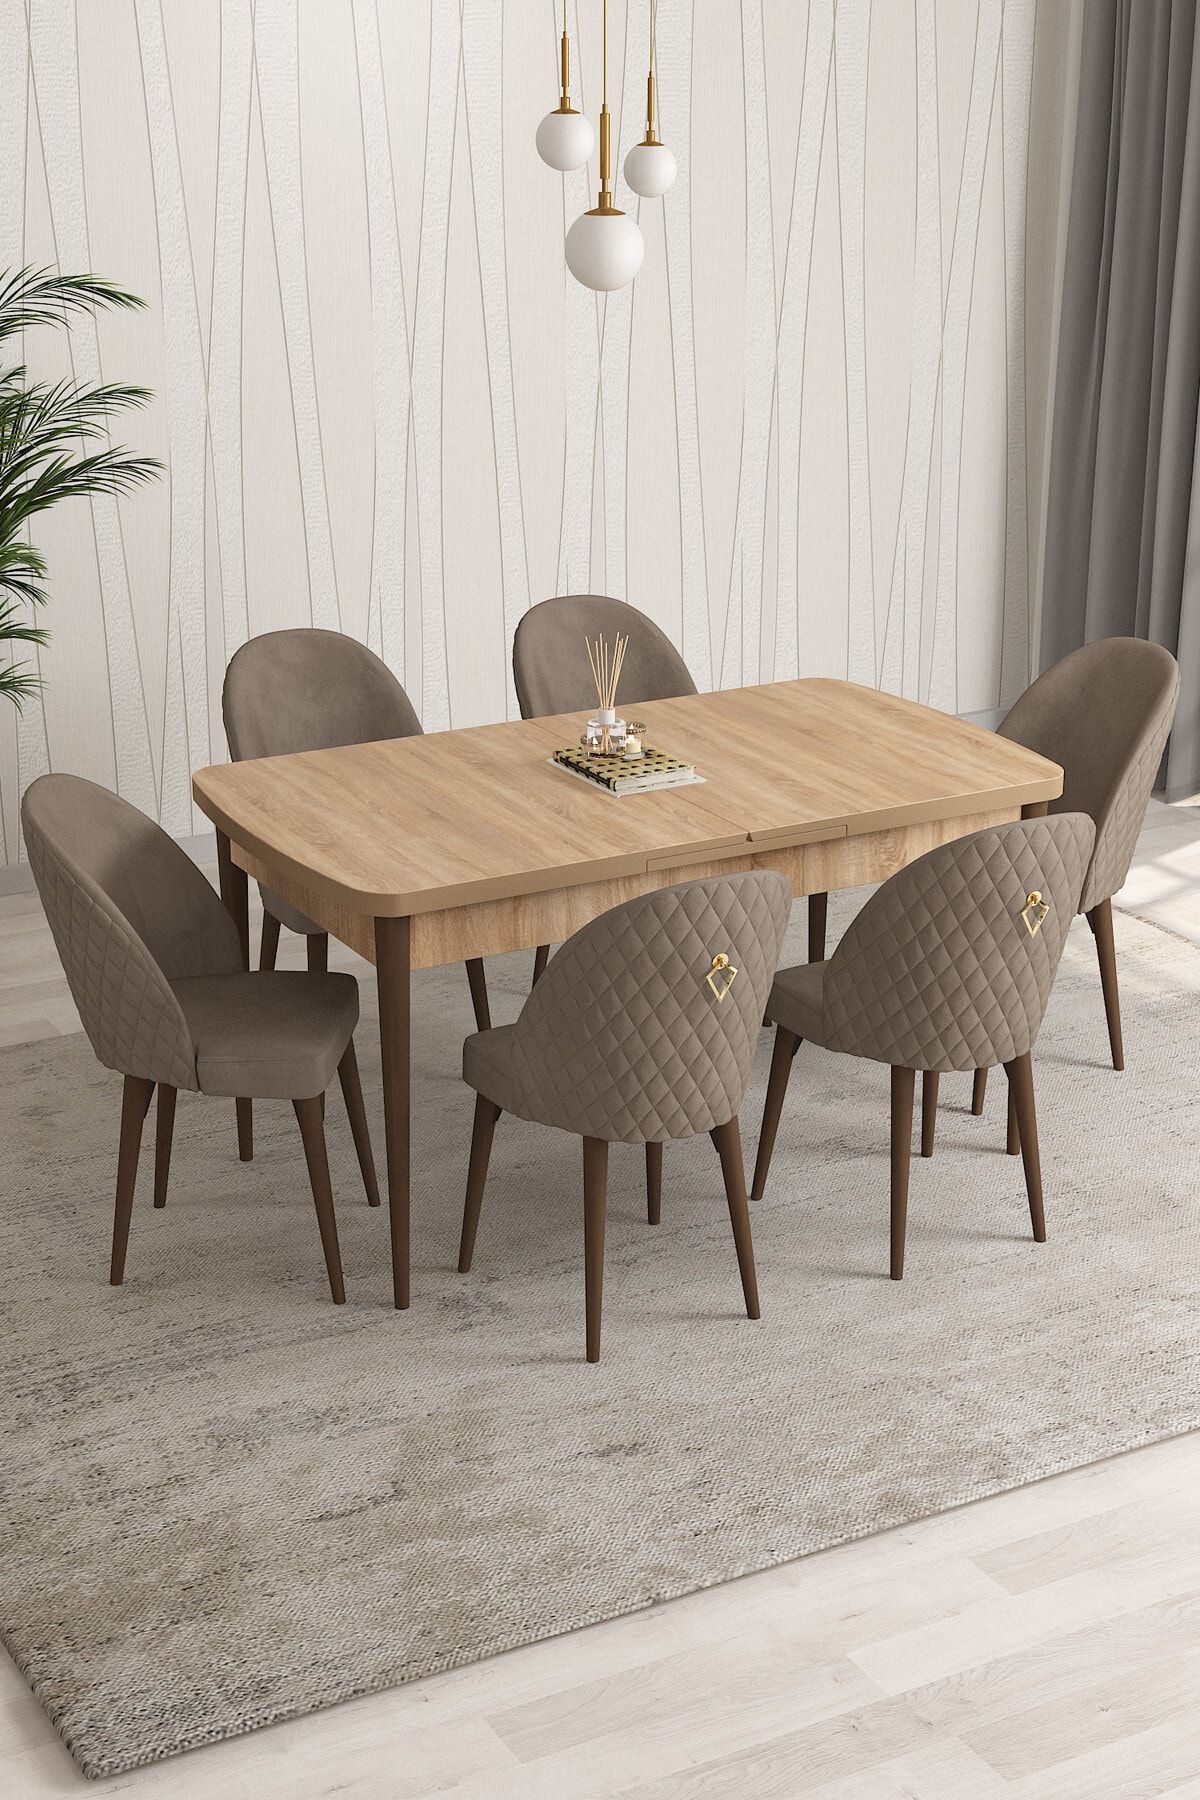 Rovena Arjeta Meşe Desen 80x132 Mdf Açılabilir Mutfak Masası Takımı 6 Adet Sandalye